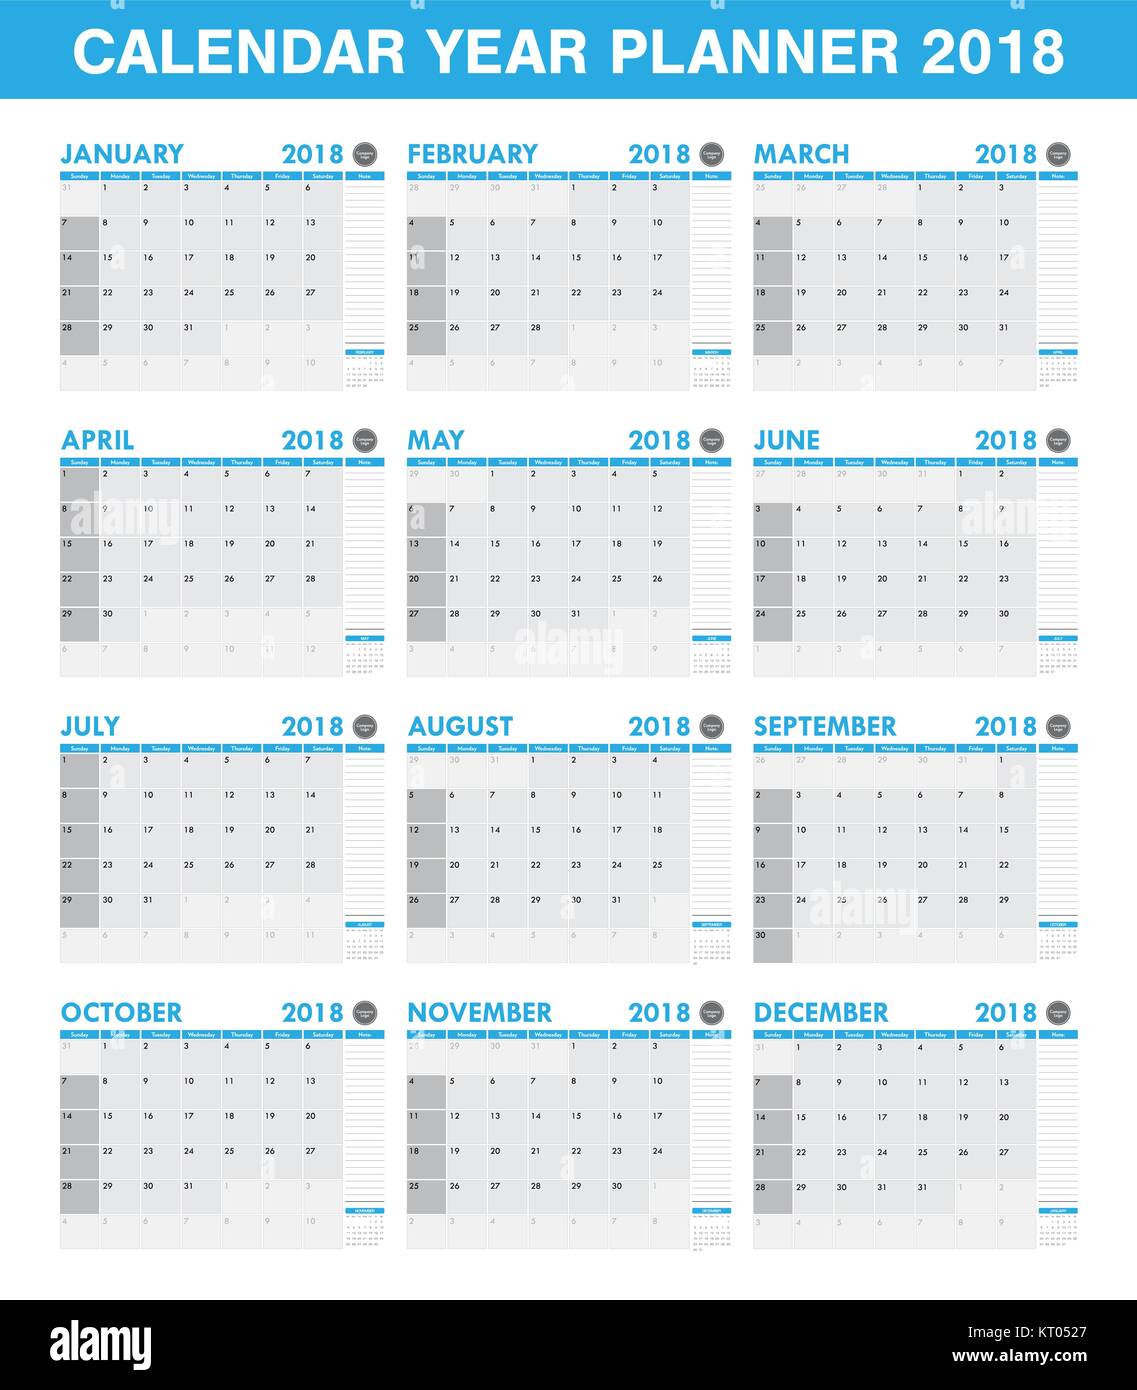 Einfache 2018 Jahresübersicht Kalender alle Monat Stock-Vektorgrafik - Alamy